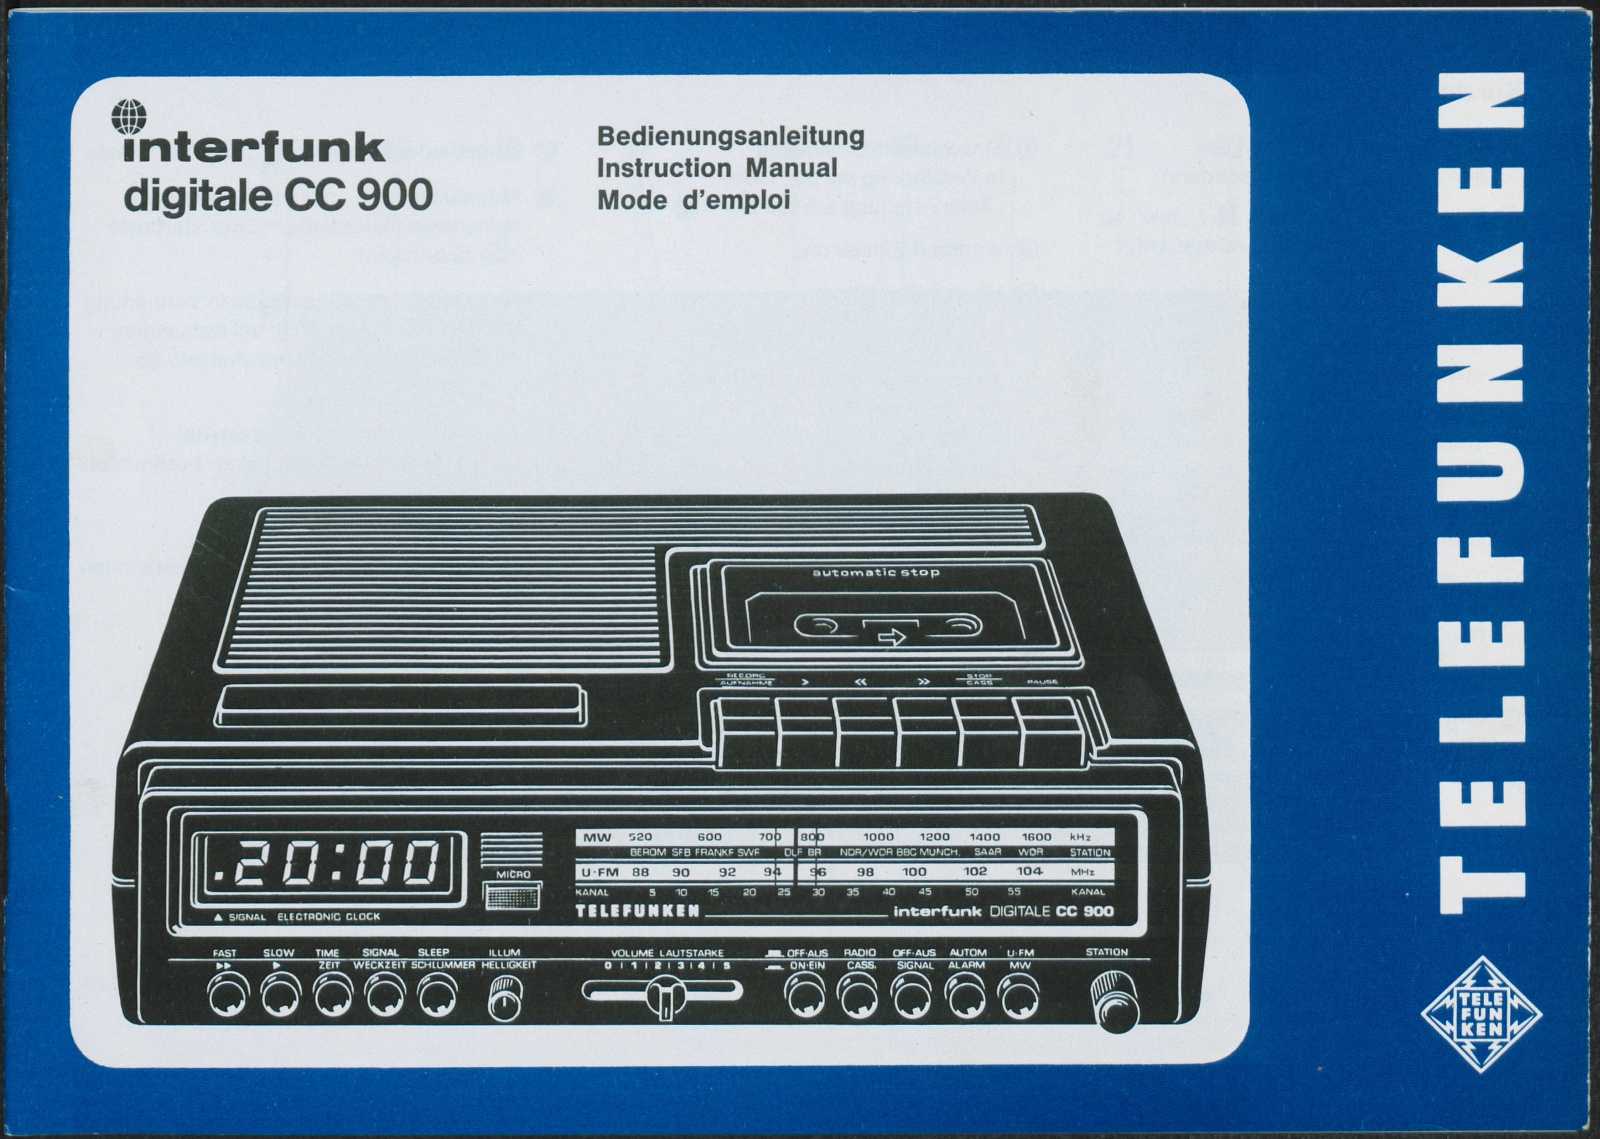 Bedienungsanleitung: Telefunken interfunk digitale CC900 (Stiftung Deutsches Technikmuseum Berlin CC0)